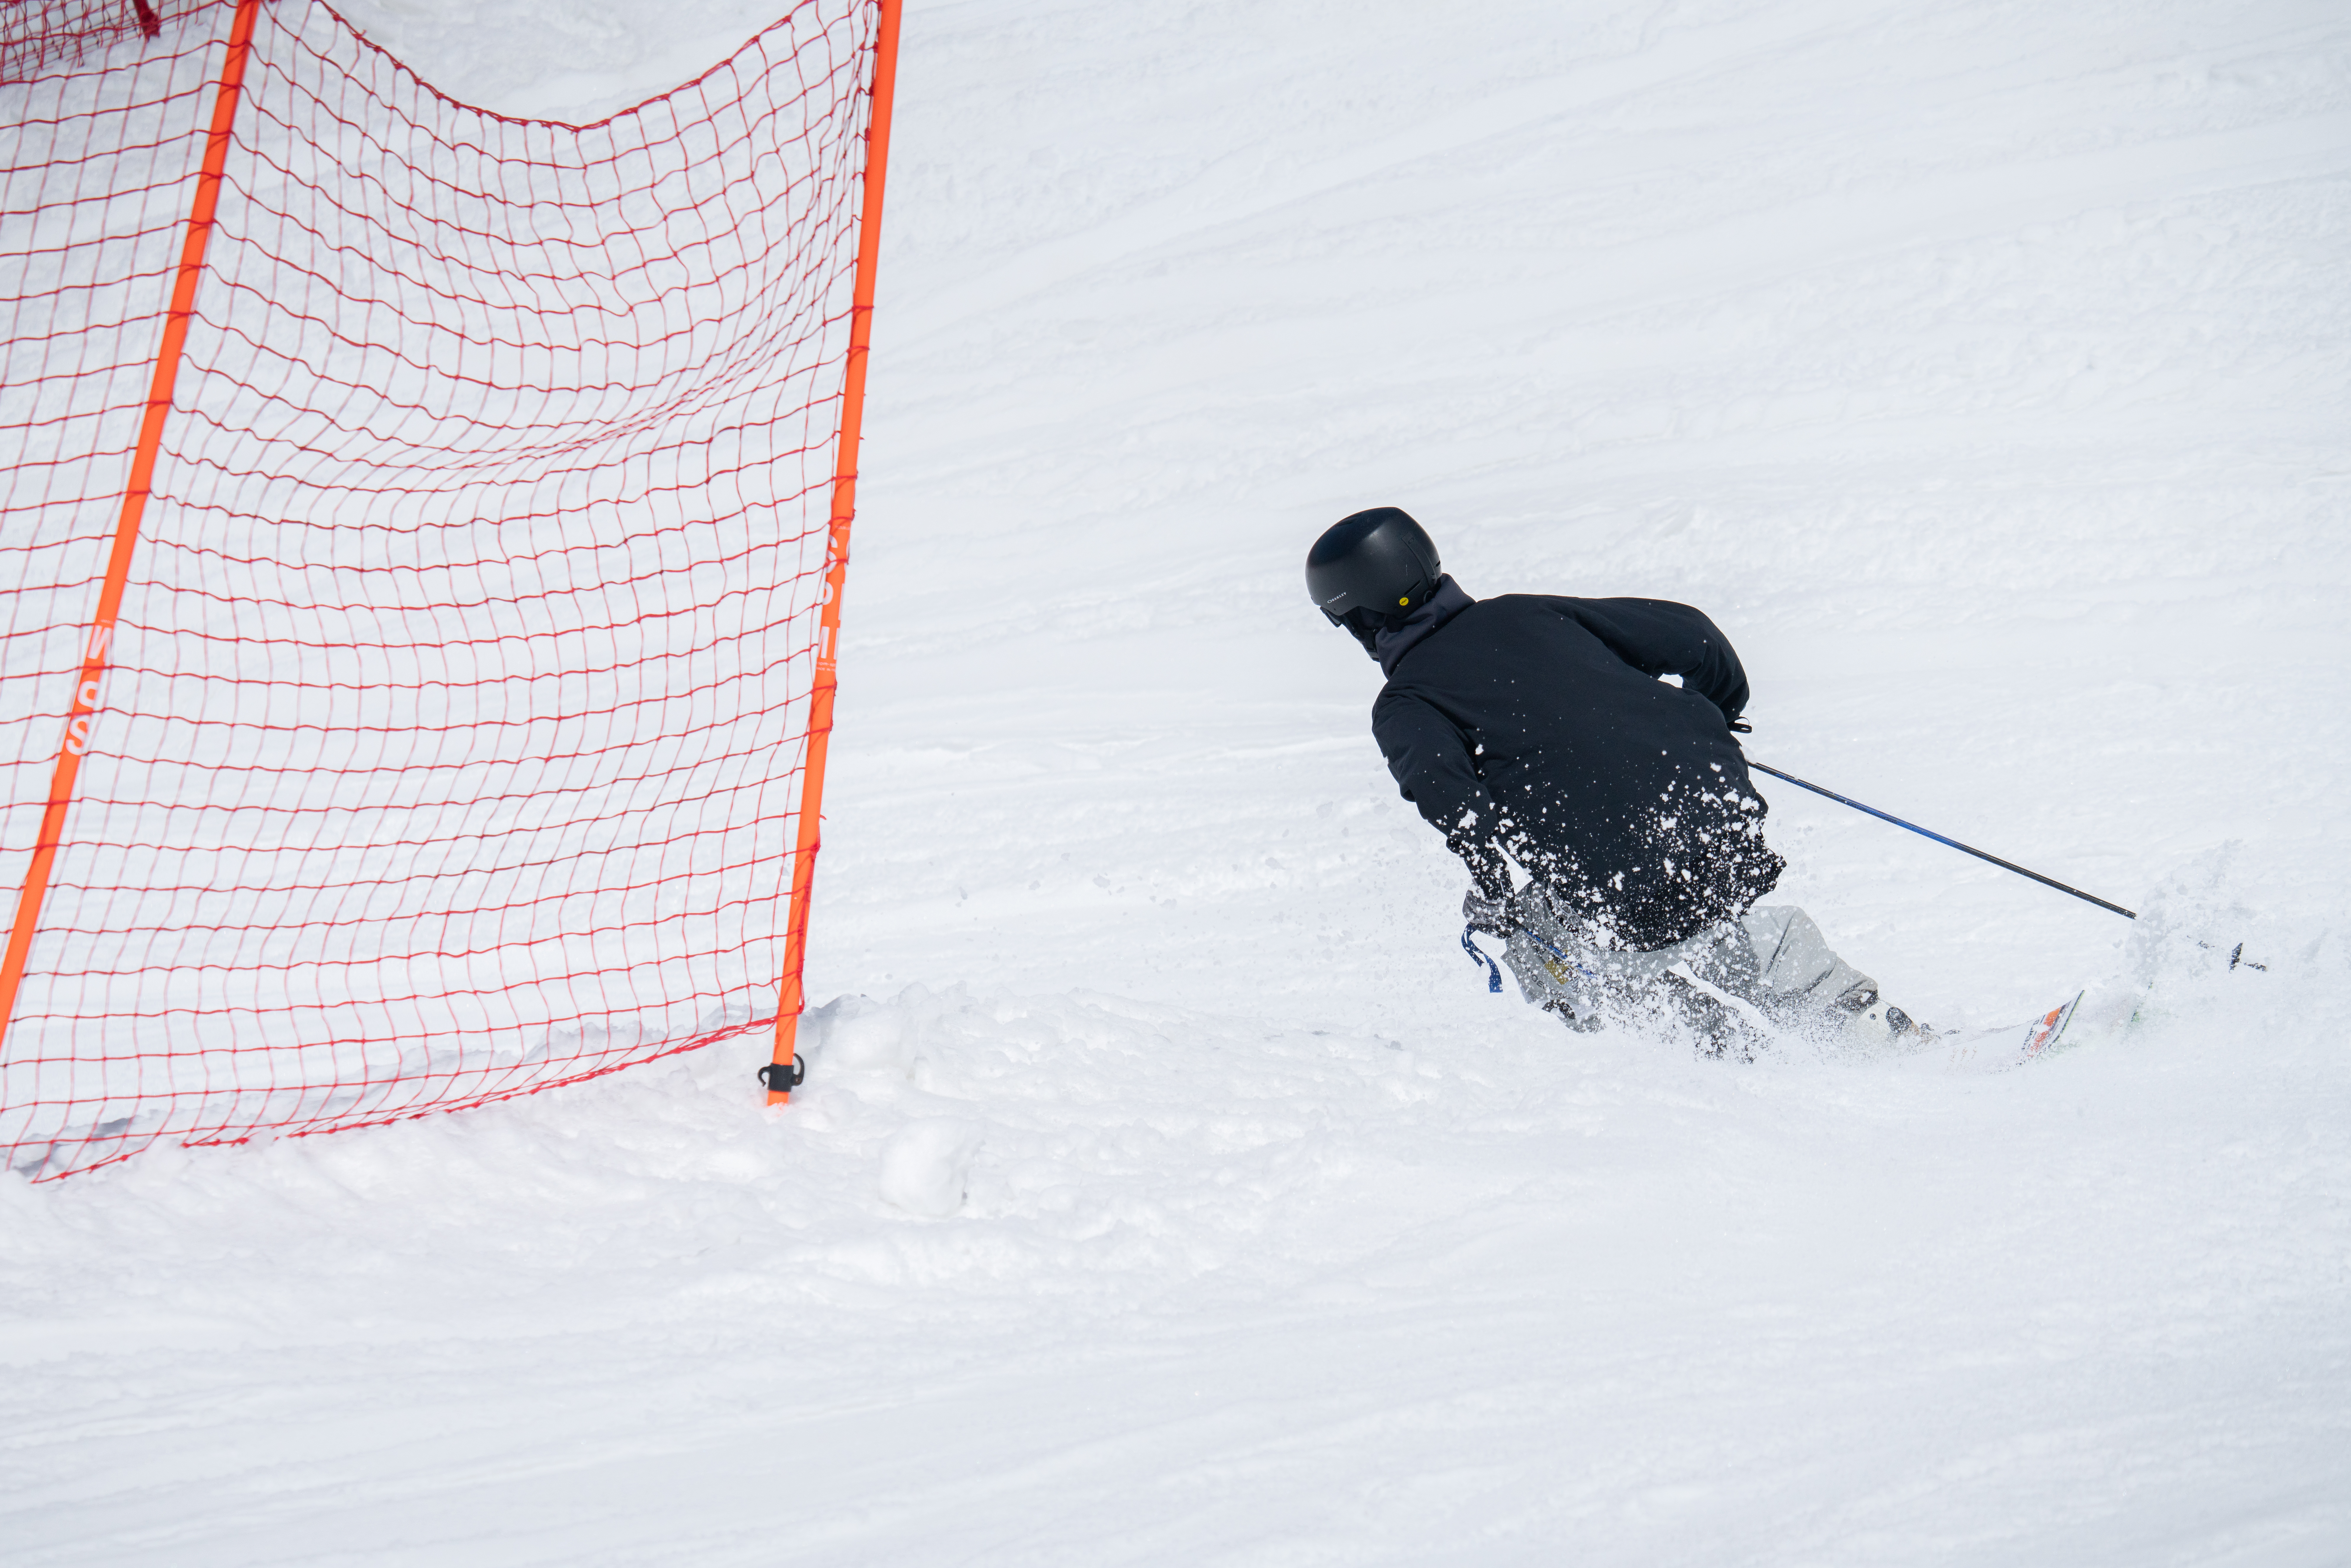 Banked Slalom at Arizona Snowbowl